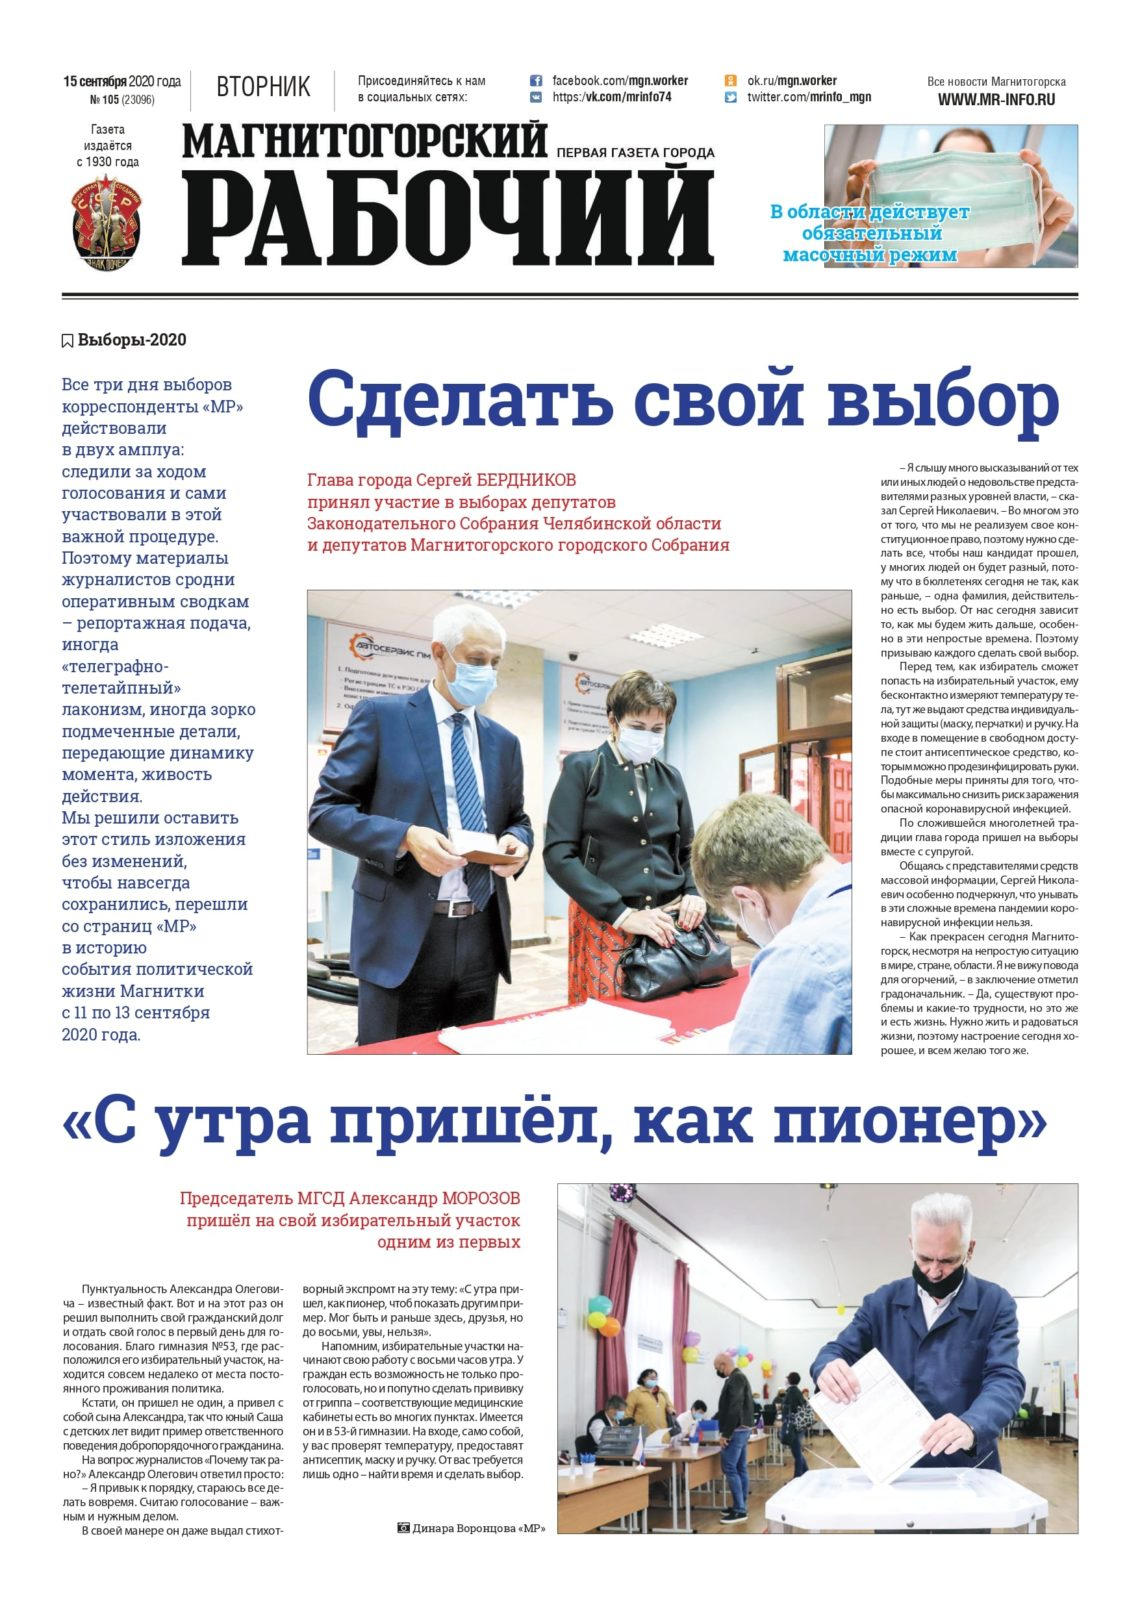 фото архив газеты "Магнитогорский рабочий" за 15 сентября 2020 года